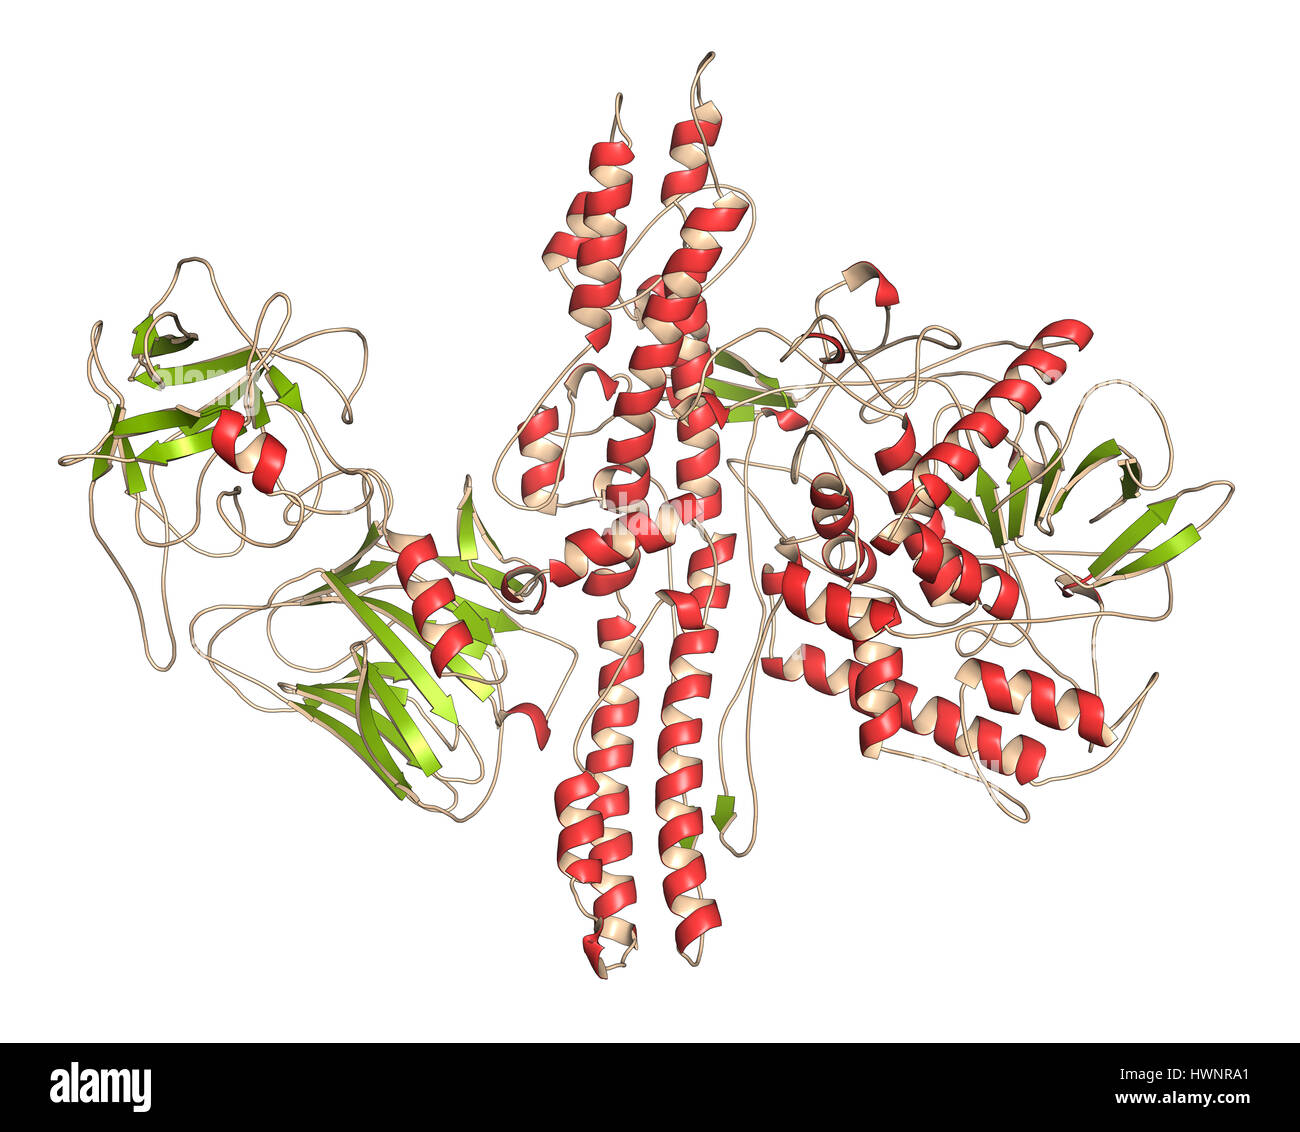 La tossina botulinica proteina neurotossici, rendering 3D. Prodotte da Clostridium botulinum. Cosmeticamente usato per il trattamento di rughe. Rappresentazione dei cartoni animati, seco Foto Stock